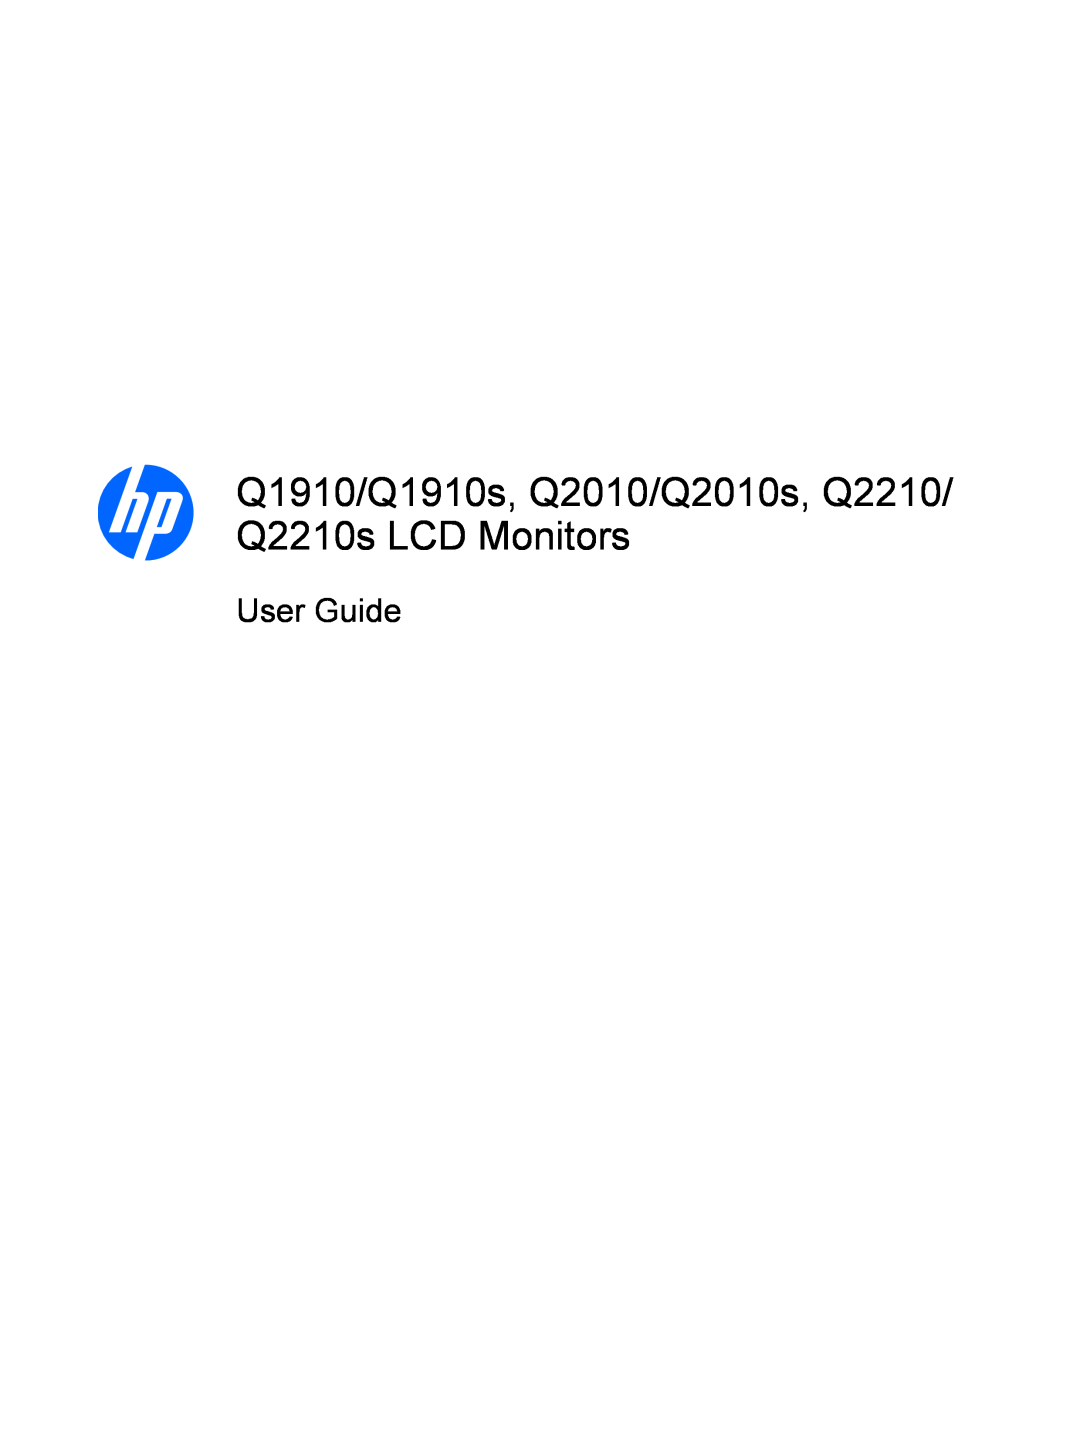 HP Q2210S, Q2010S, Q1910S manual Q1910/Q1910s, Q2010/Q2010s, Q2210/ Q2210s LCD Monitors, User Guide 